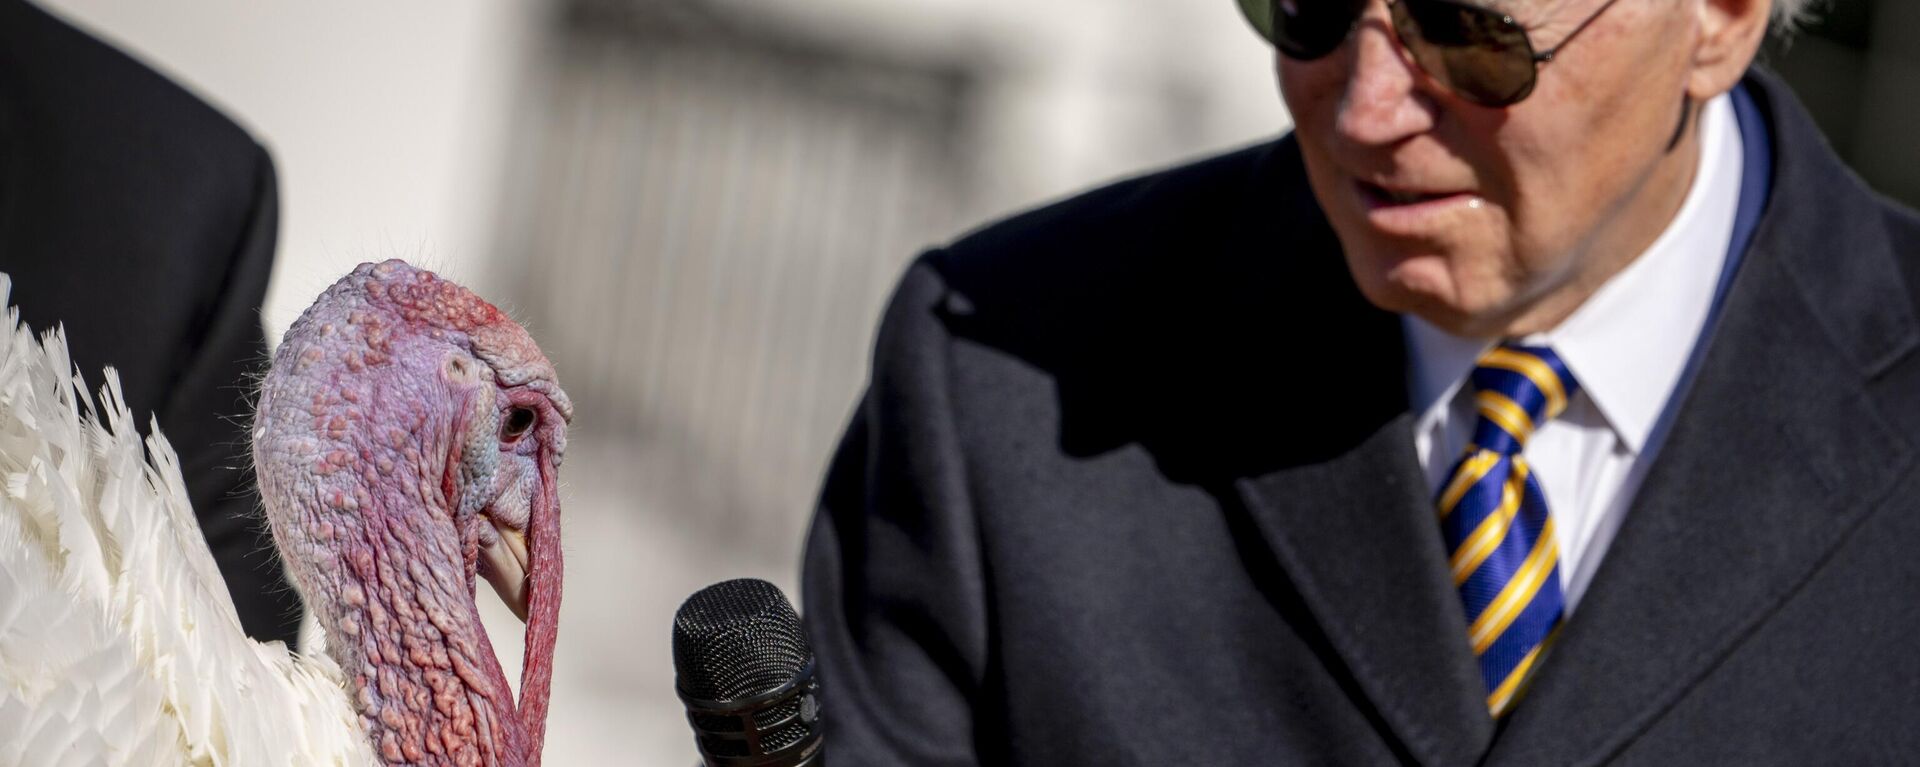 الرئيس جو بايدن يحمل ميكروفون بالقرب من الديك الرومي بمناسبة عيد الشكر الوطني، خلال حفل عفو في البيت الأبيض في واشنطن، 21 نوفمبر 2022. - سبوتنيك عربي, 1920, 30.11.2022